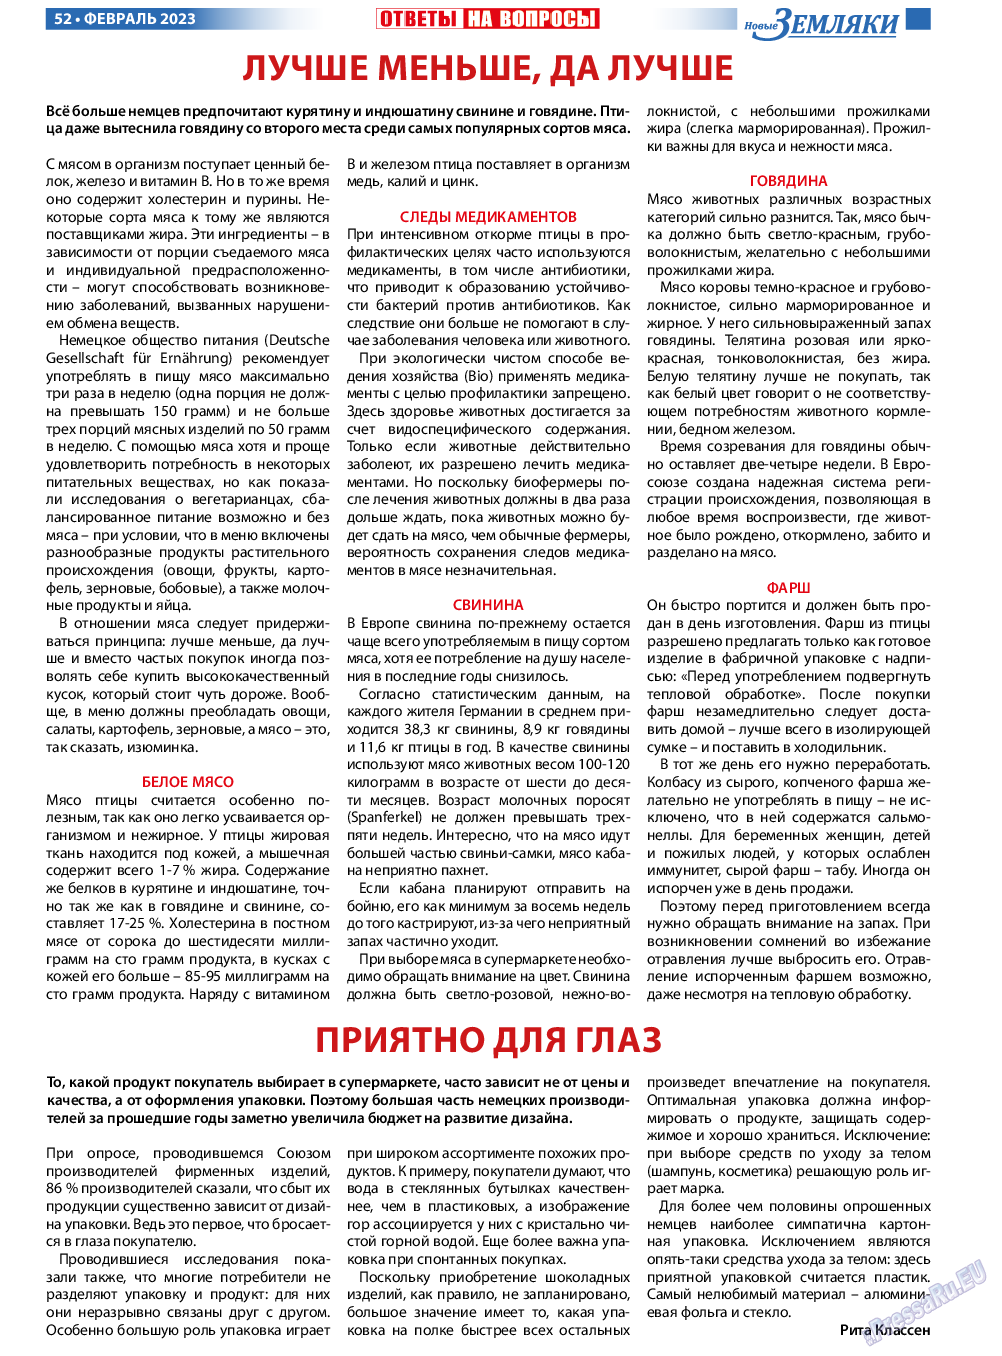 Новые Земляки, газета. 2023 №2 стр.52